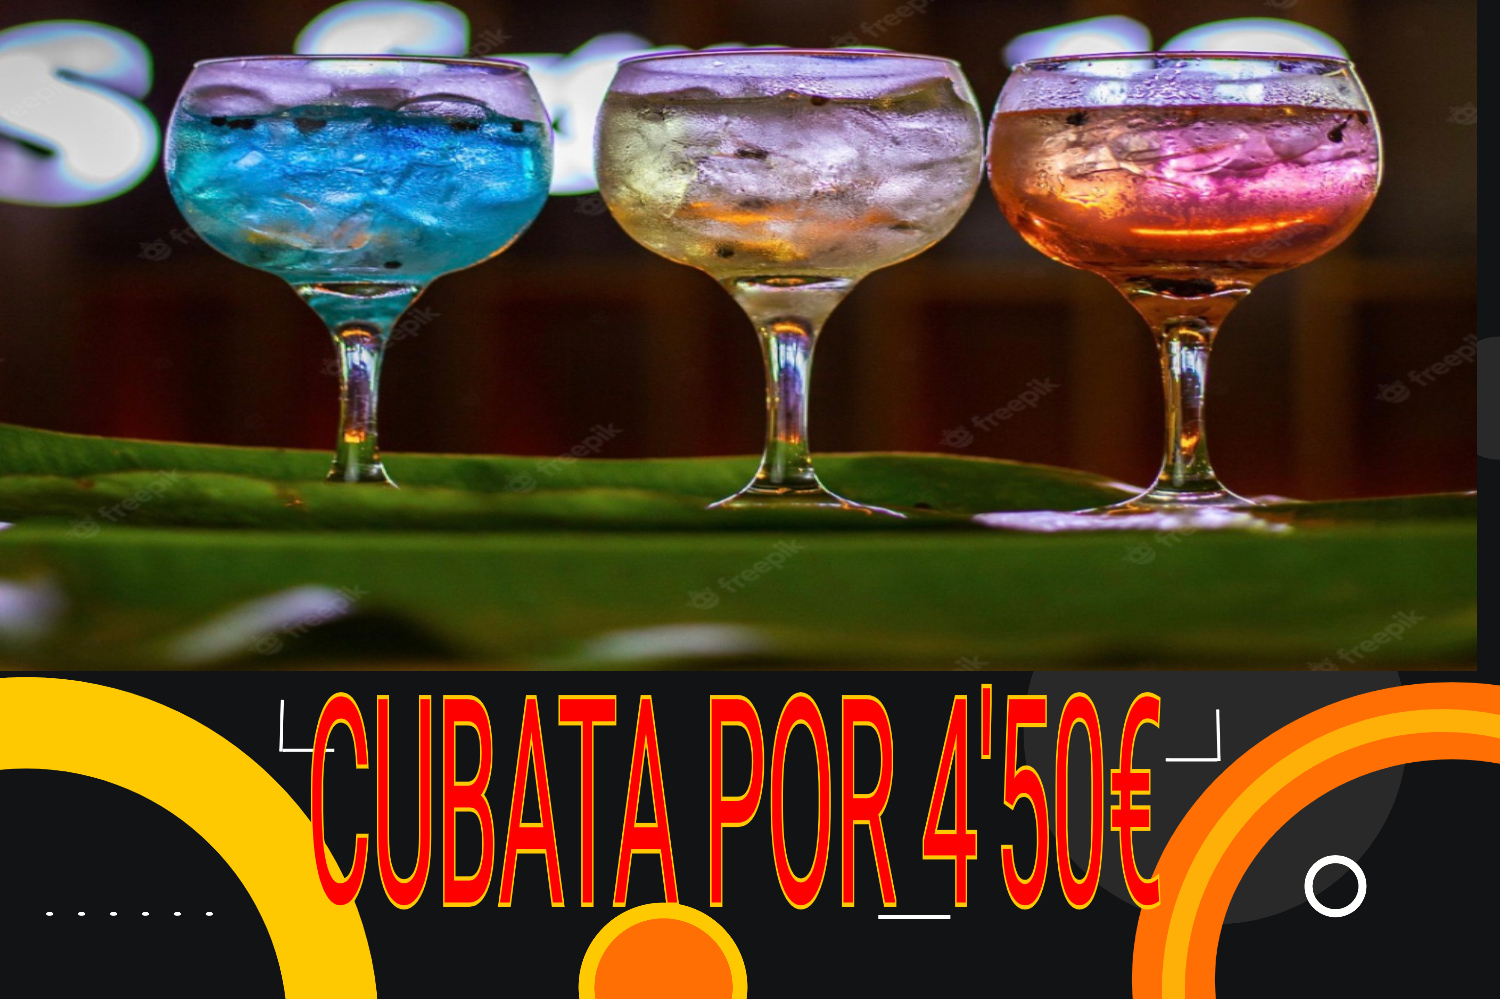 CUBATA POR 4'50€